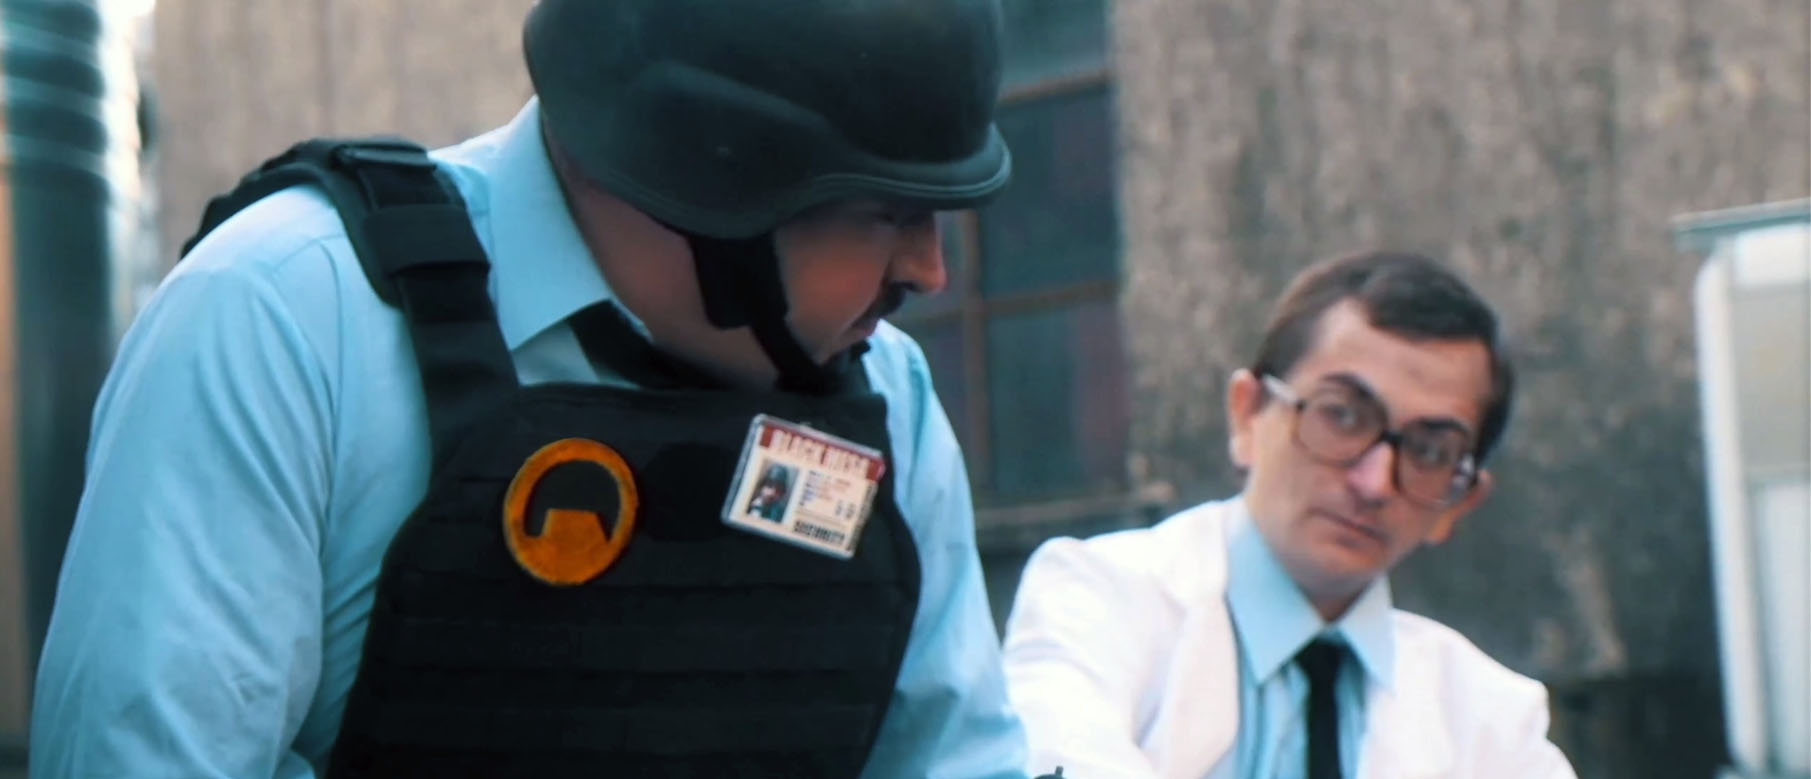 Изображение к Half-Life: Foxtrot Uniform - еще одна фанатская короткометражка